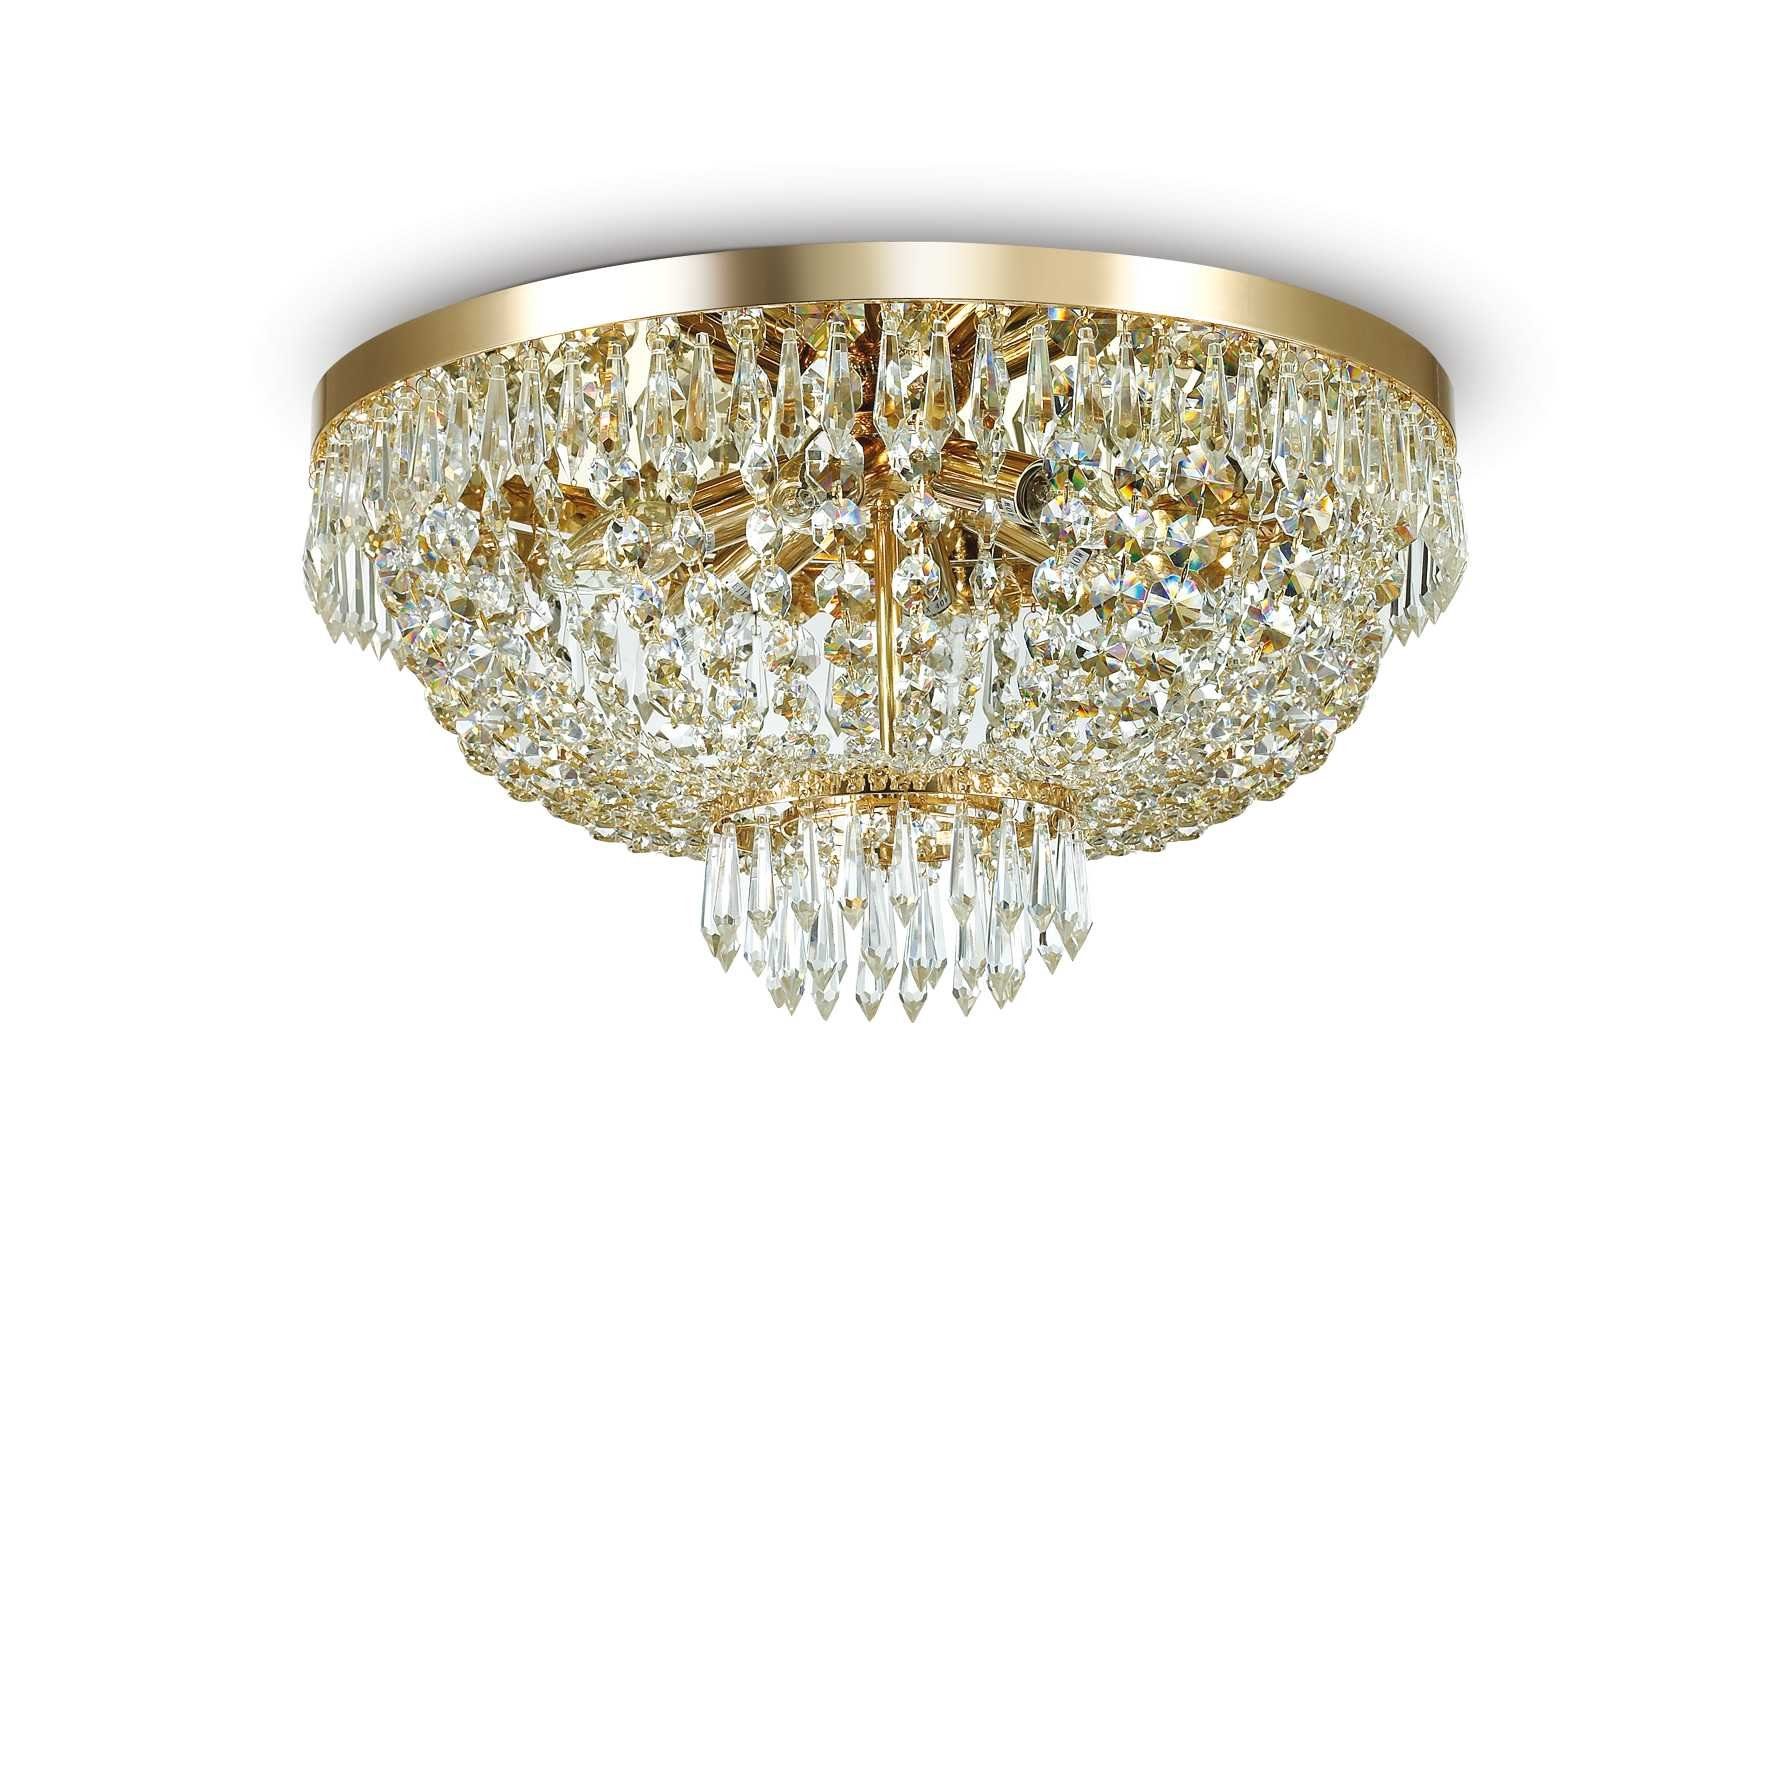 Ideal Lux Deckenleuchte Kristall Kristallen Caesar aus gefertigt gold Ø51cm Deckenleuchte